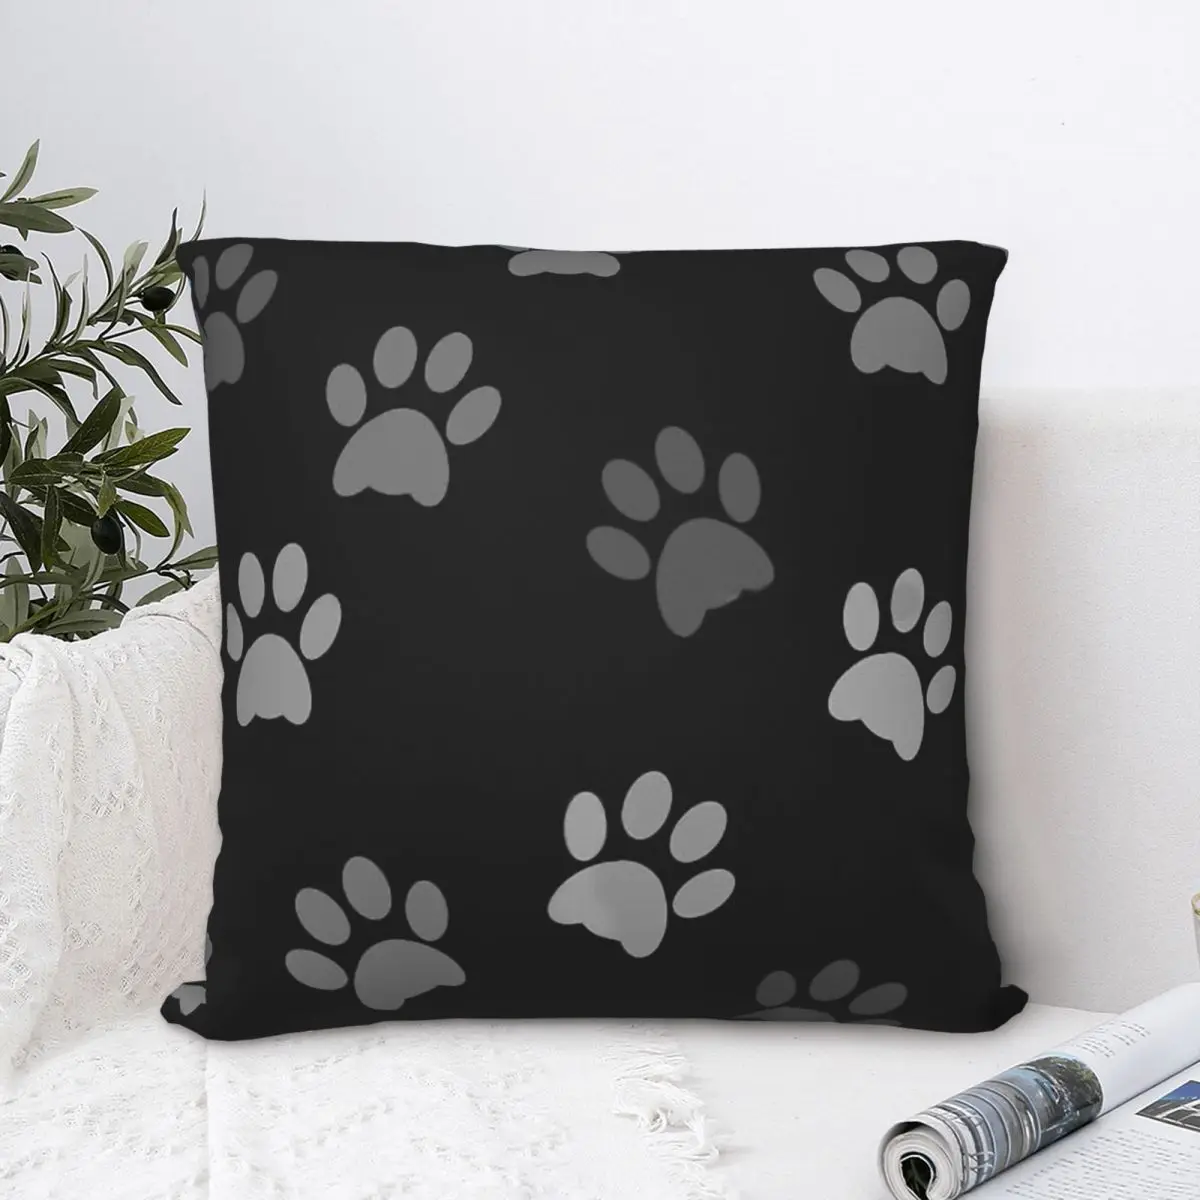 

Paw Print Throw Pillow Case Animal Cute Forest Ocean Cushion Home Sofa Chair Print Decorative Hug Pillowcase